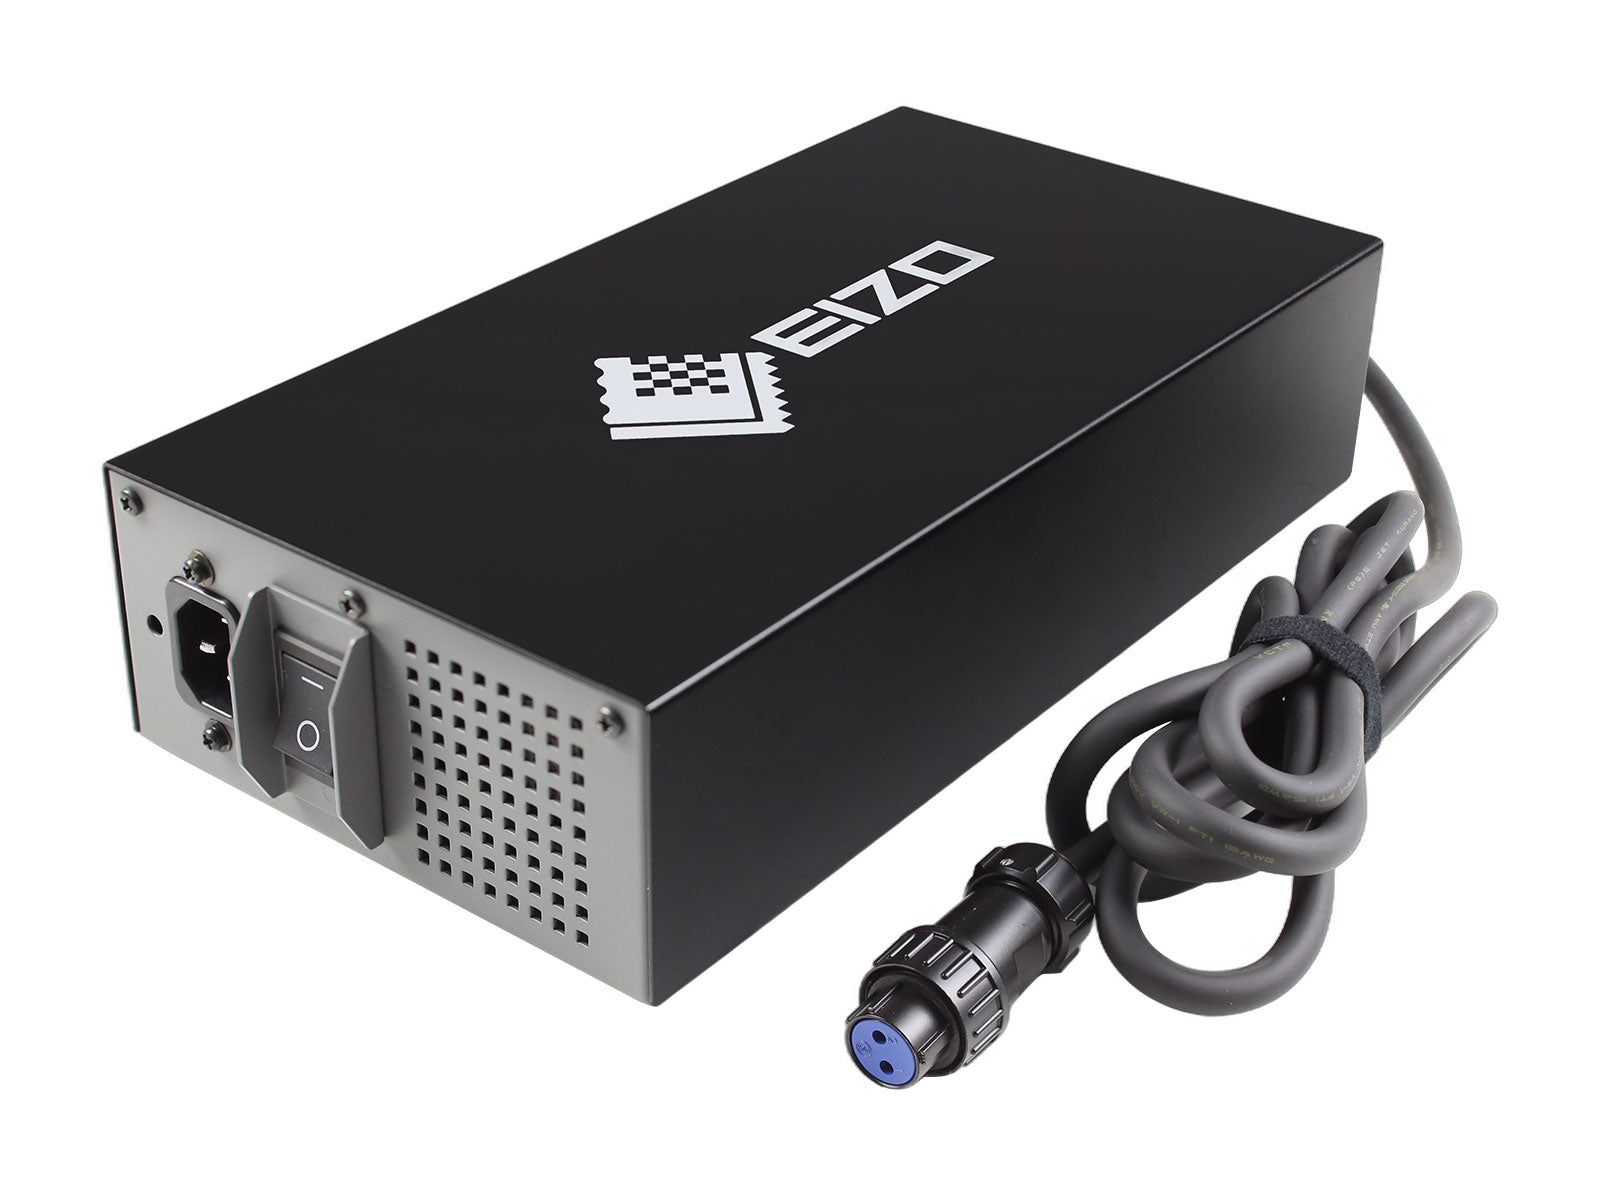 Eizo 24.5V 10A Power Supply AC Adapter for Eizo Monitors (PSA-073)